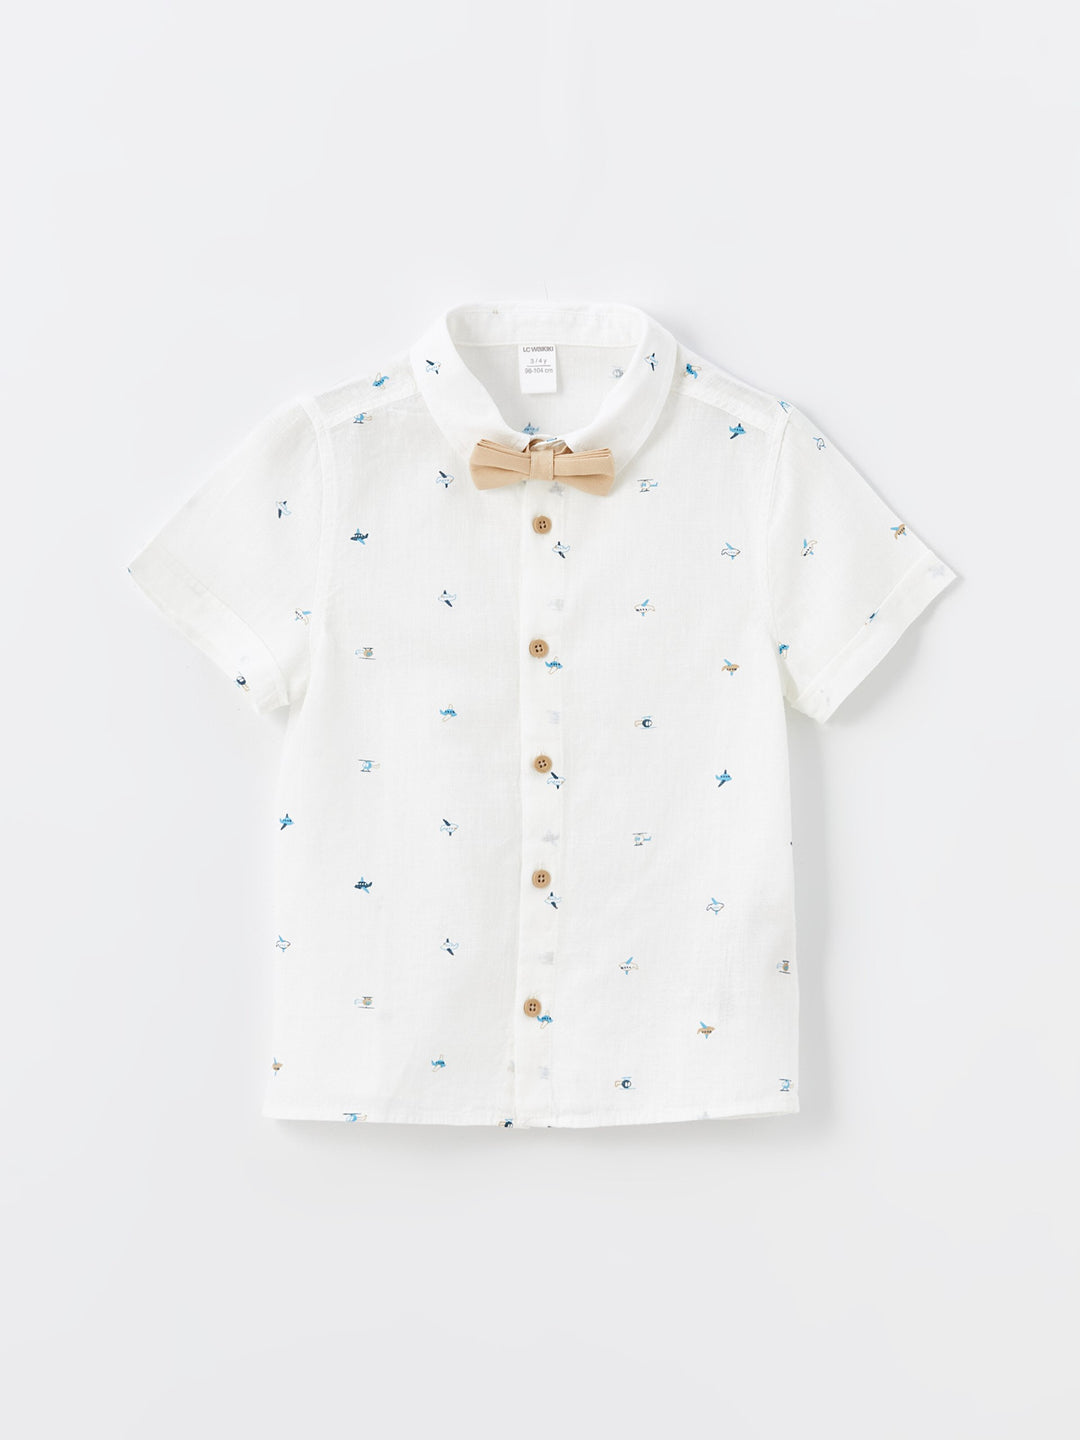 Short Sleeve Printed Baby Boy Shirt and Shorts Set of 2